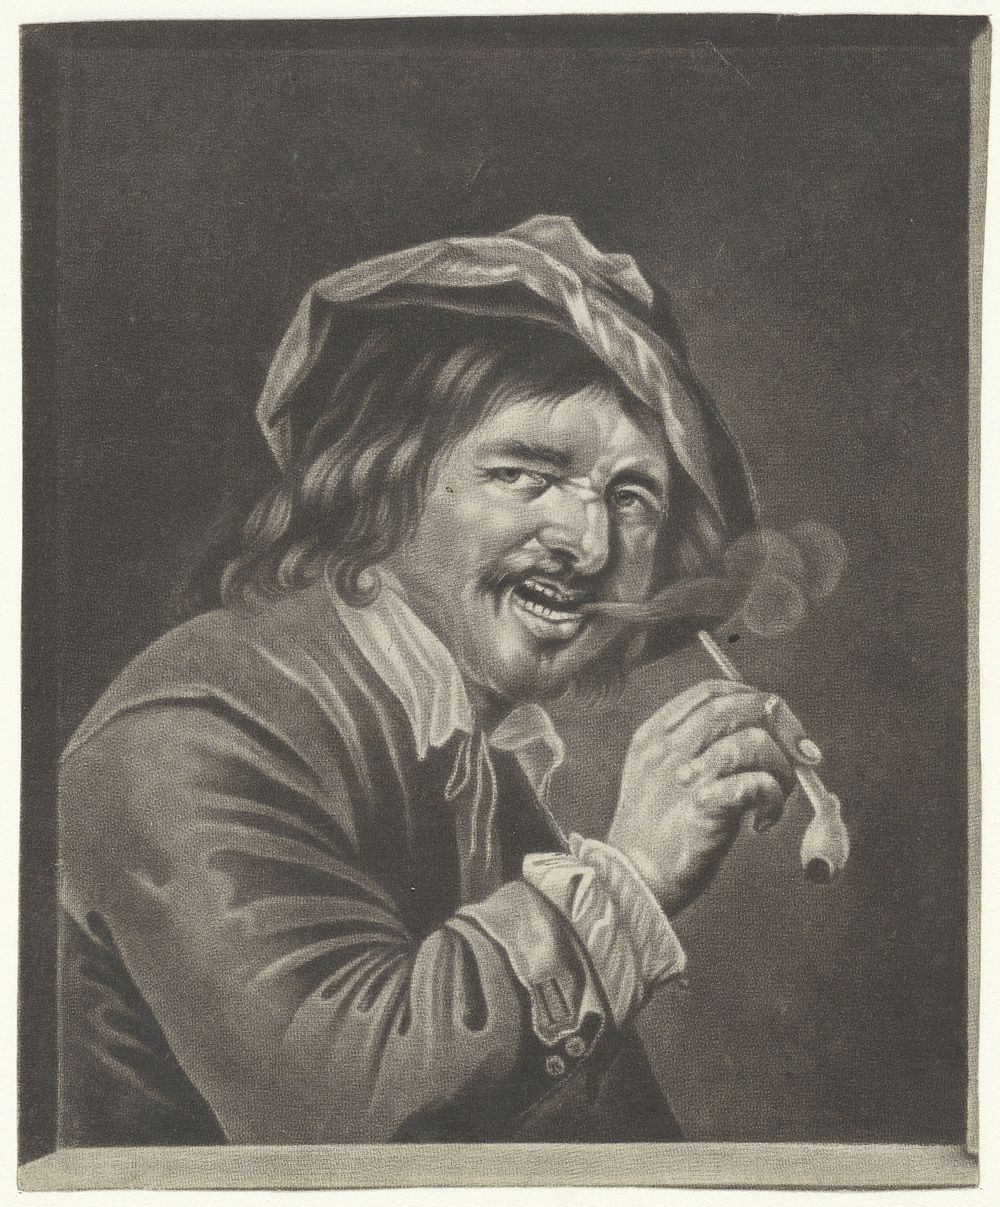 Man met een pijp (de Reuk) (1660 - 1743) by anonymous, Jan Verkolje I and Petrus Staverenus